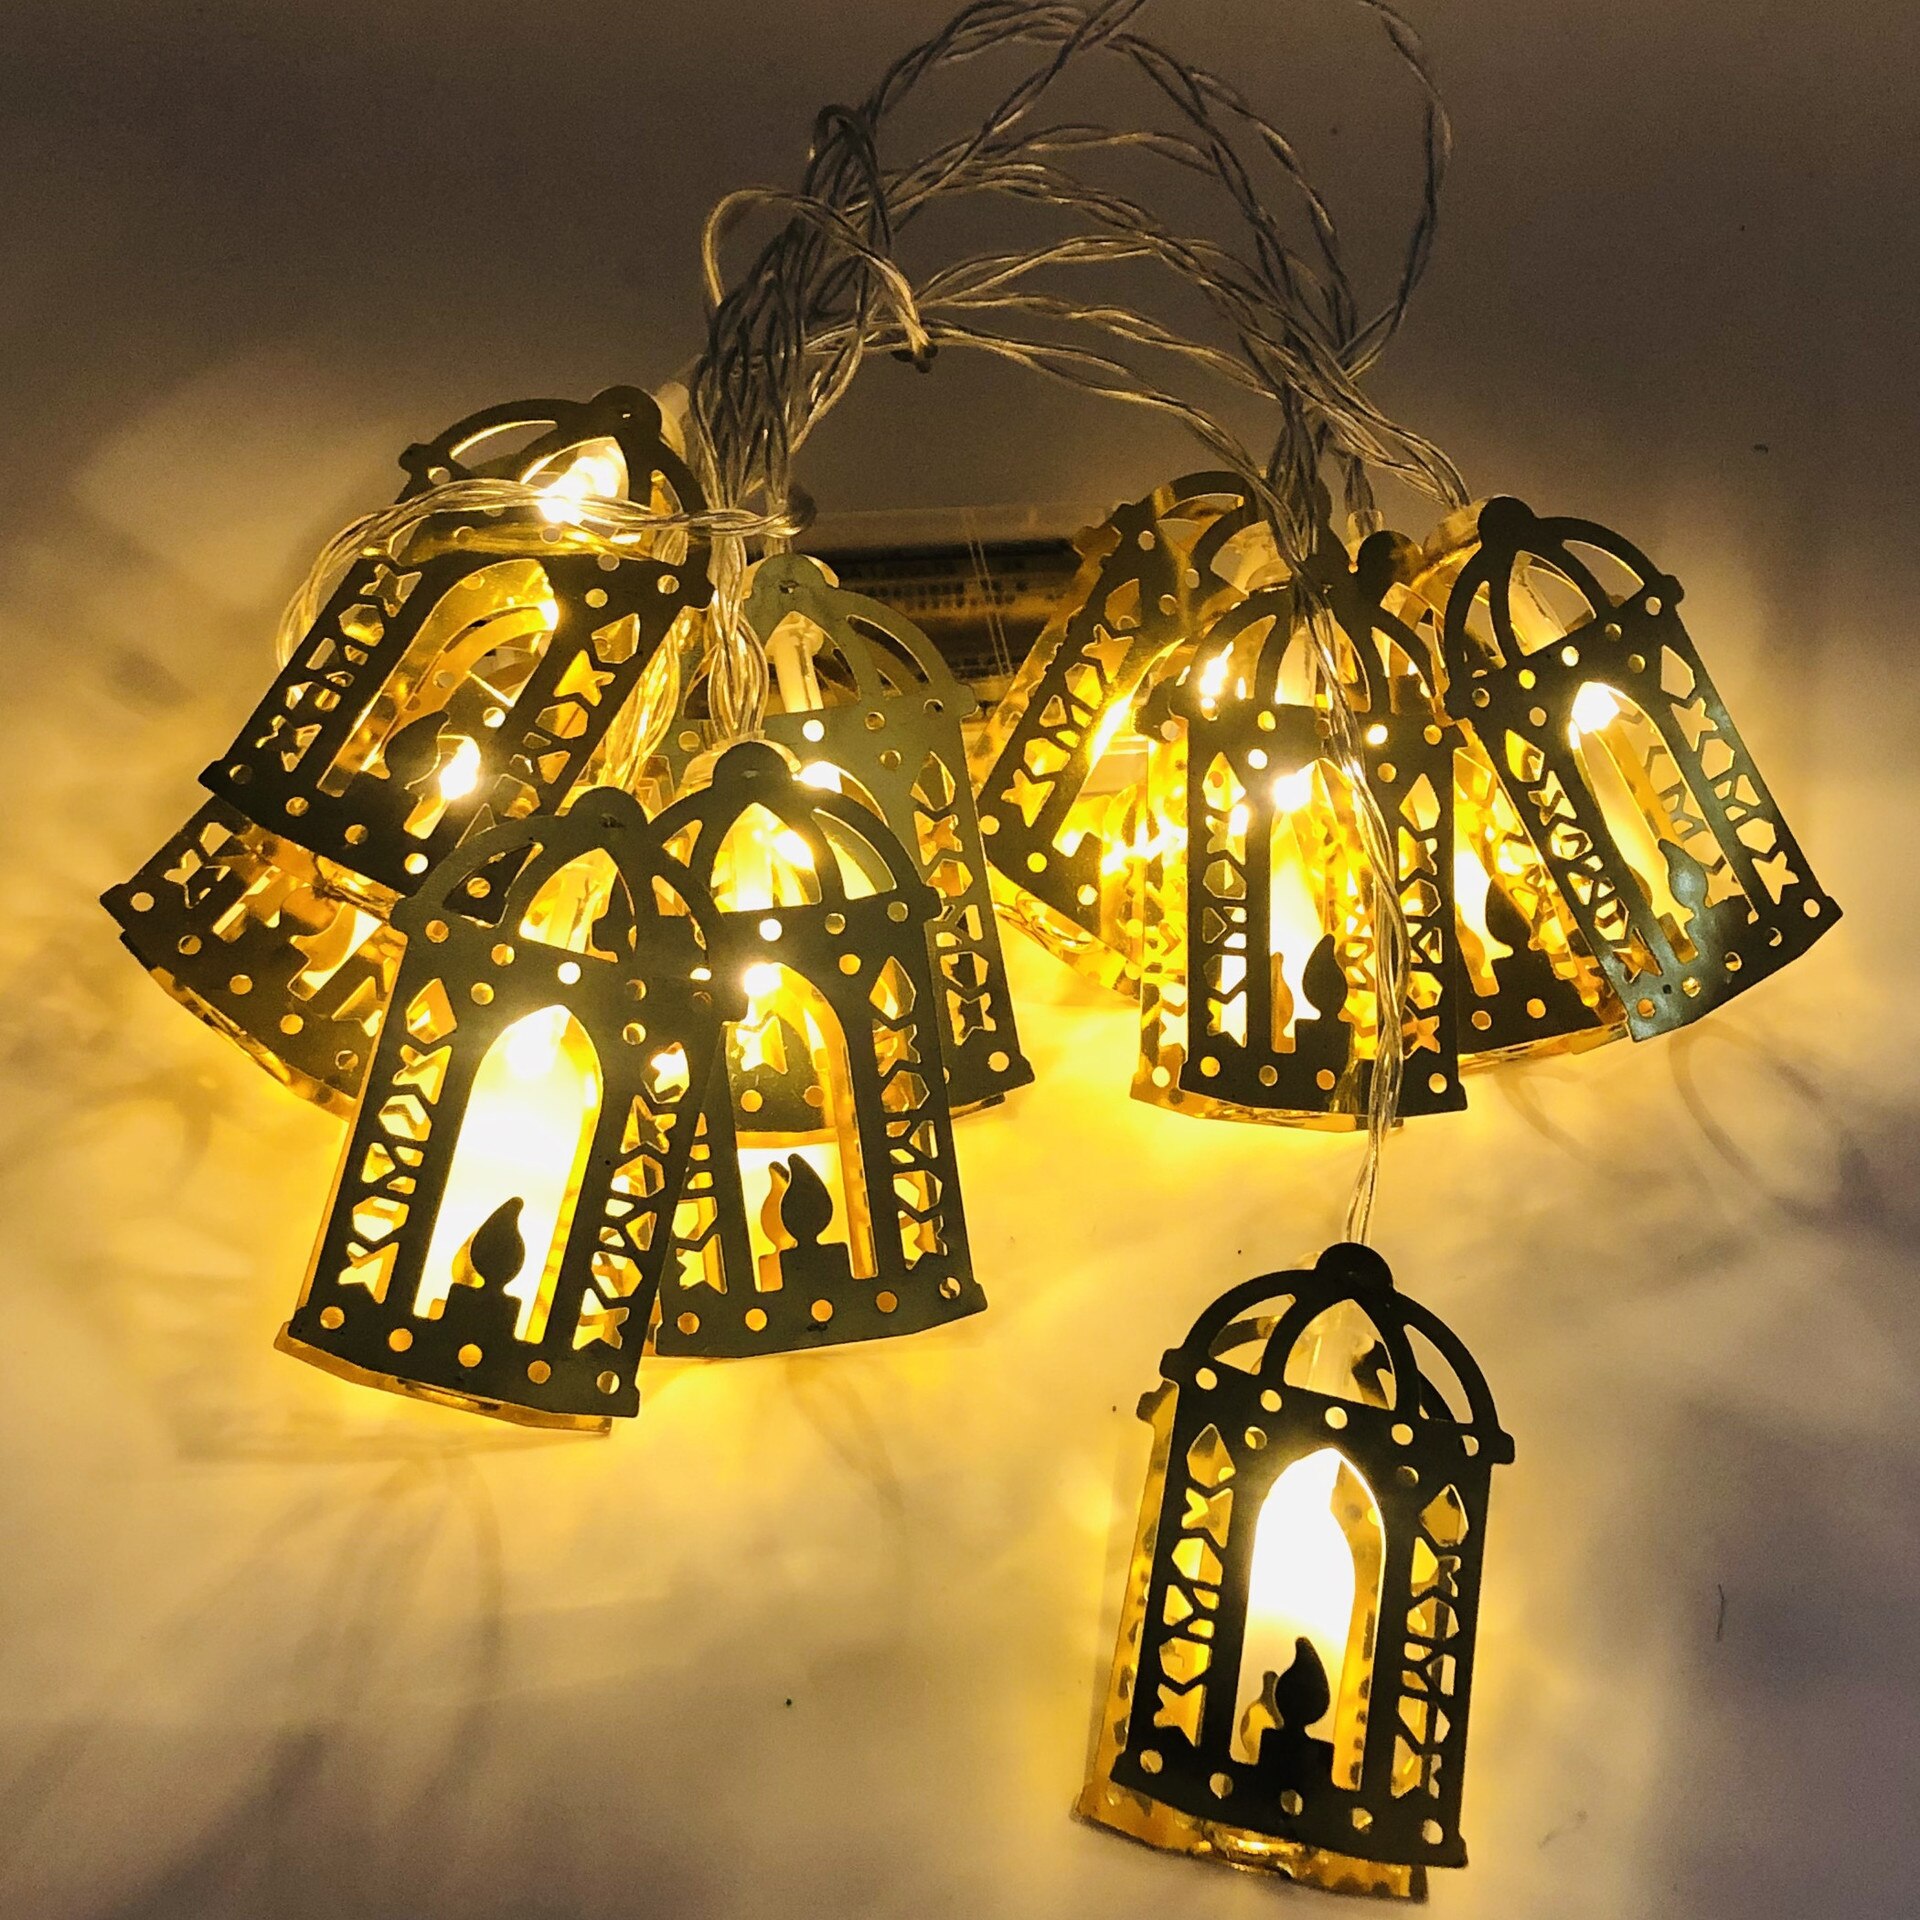 Hold Csillag Palota Eid Mubarak Light Garland Ramadan Dekoráció Iszlám Muzulmán Párt Al Adha Otthon